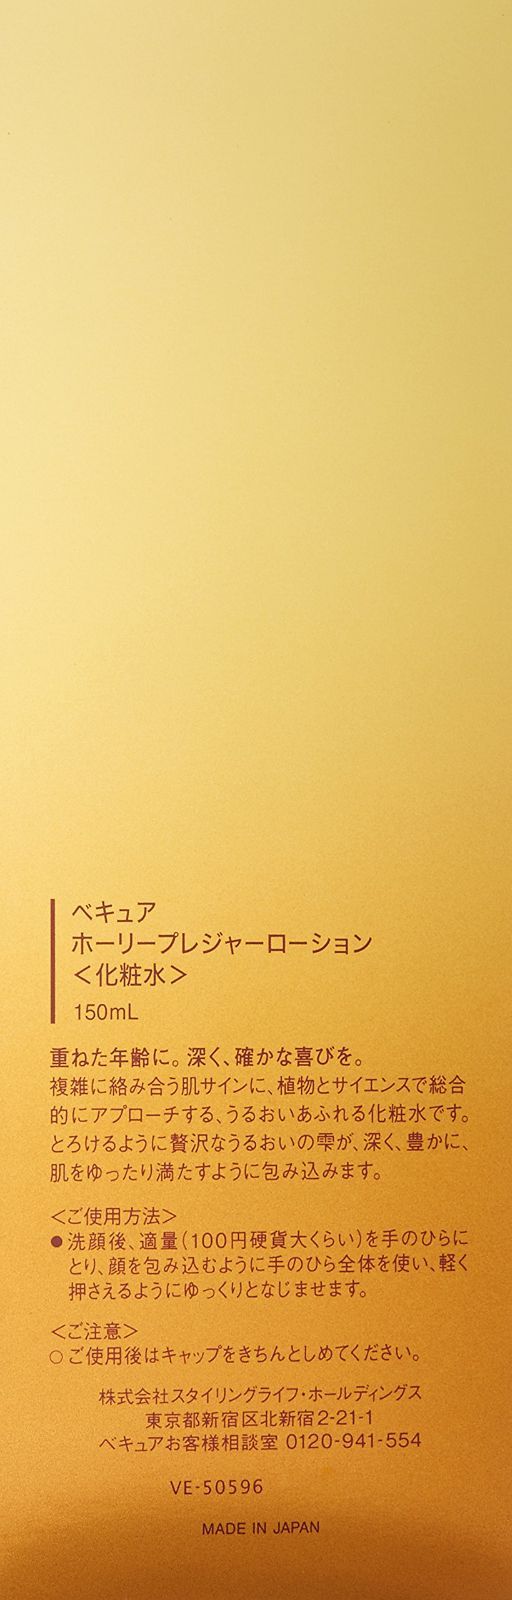 特価商品】150mL(化粧水) ホーリープレジャーローション ベキュア GOAL SHOP メルカリ